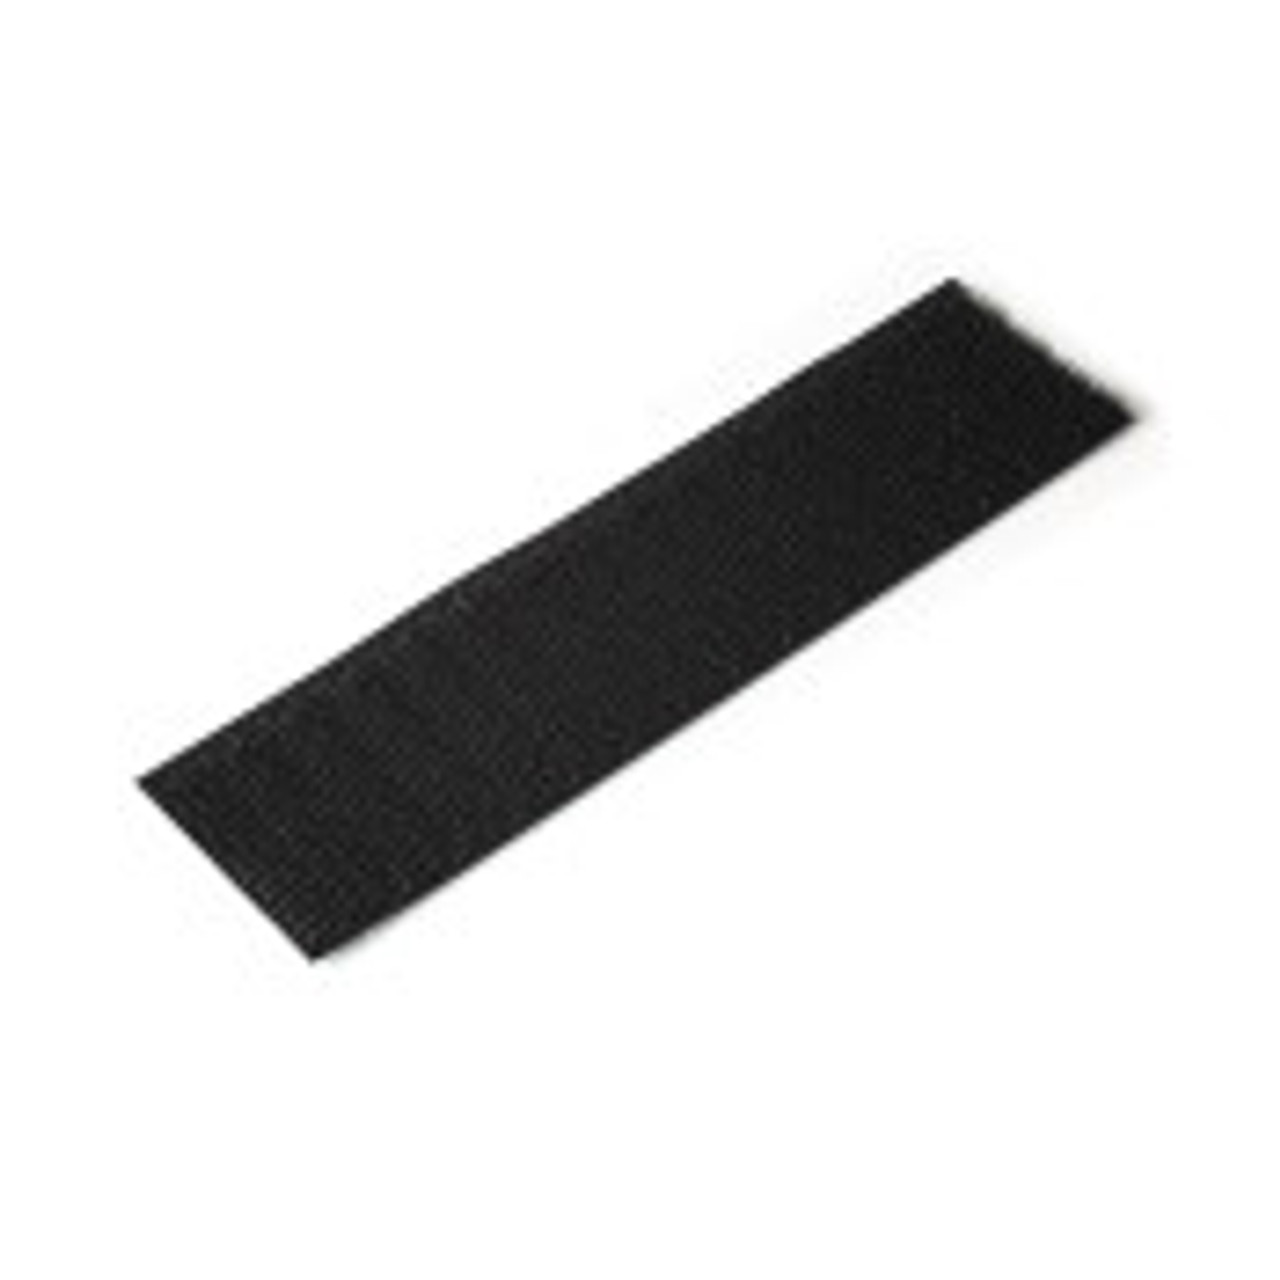 Velcro® Brand 4 Dark Grey Hook and Loop Set - SEW-ON TYPE - 1 YARD - UNCUT